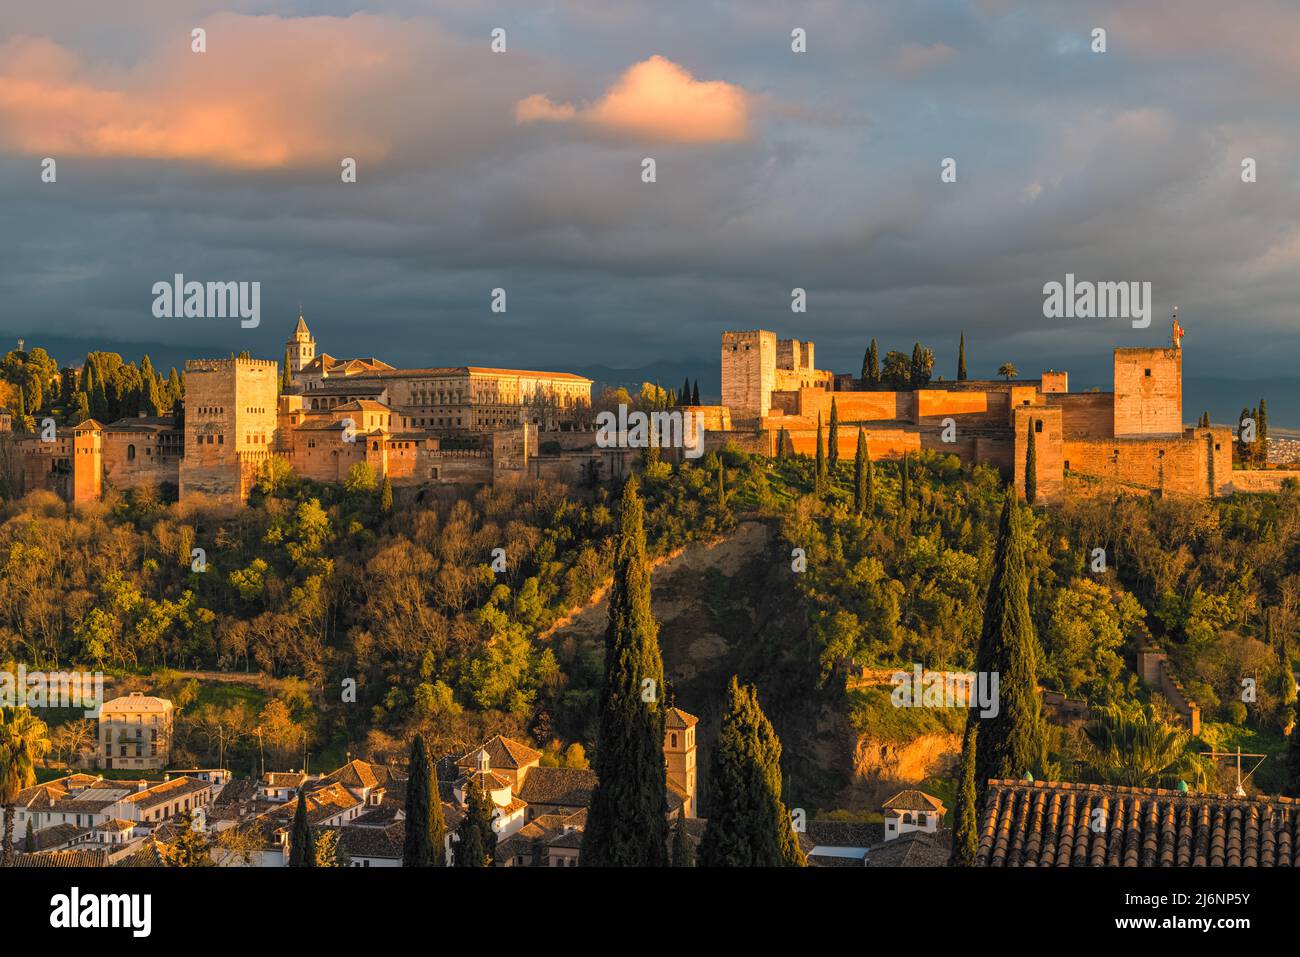 Die Alhambra ist ein Palast- und Festungskomplex in Granada, Andalusien, Spanien. Es ist eines der berühmtesten Denkmäler der islamischen Architektur und Stockfoto